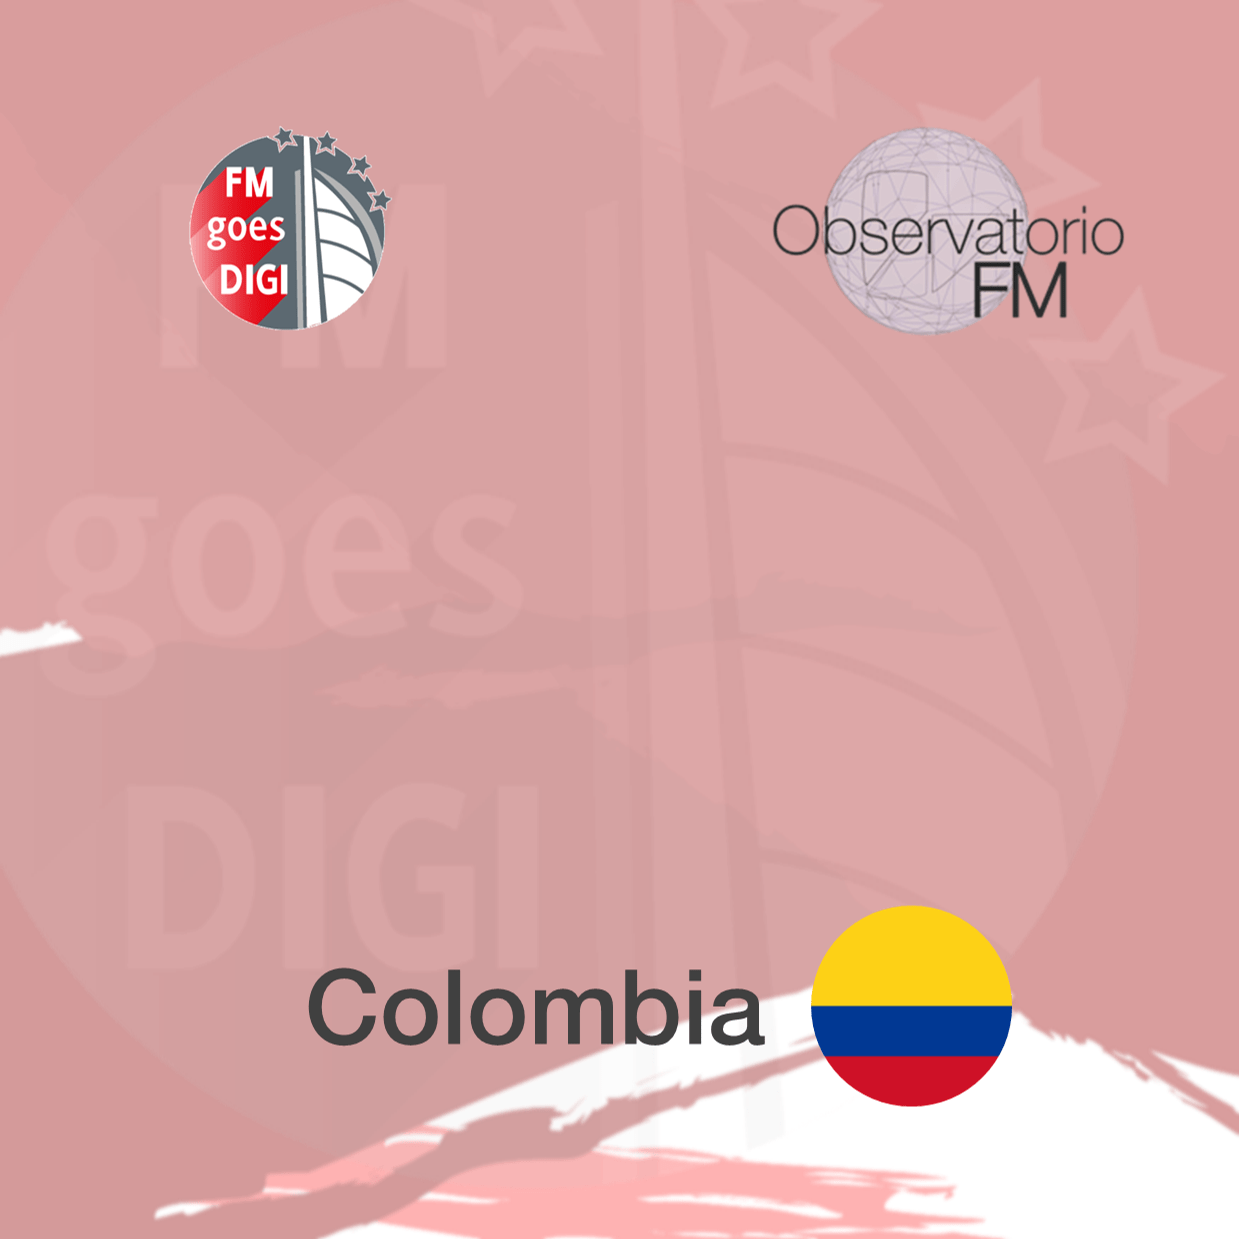 FMgoesDIGI_Colombia